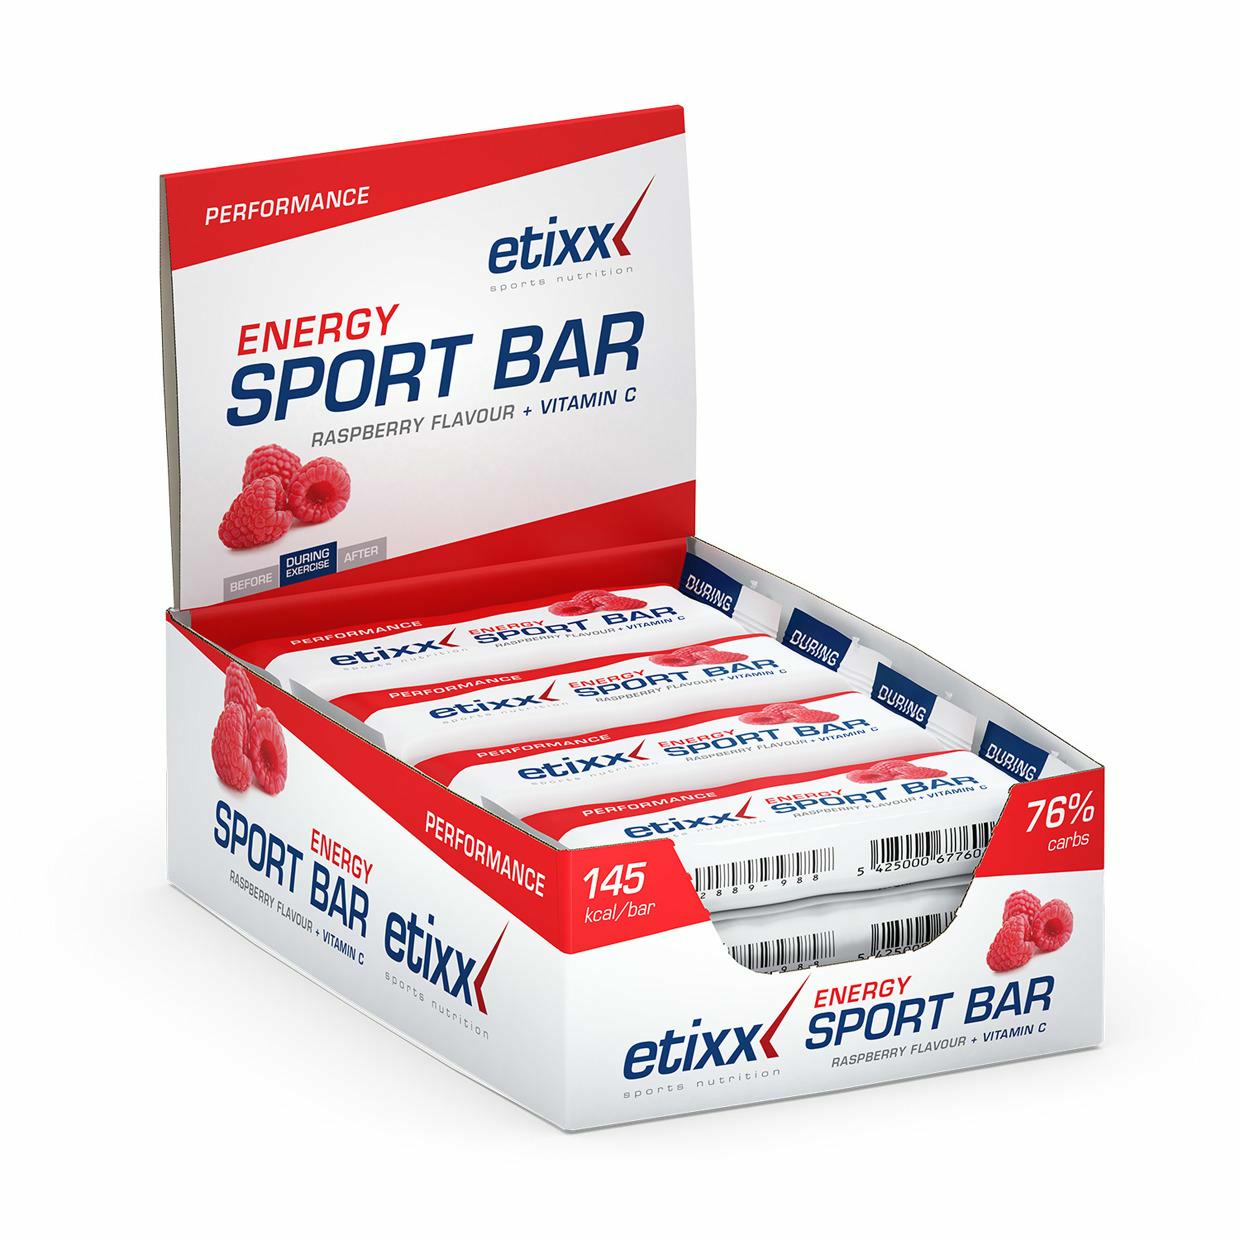 Energy Sport Bar